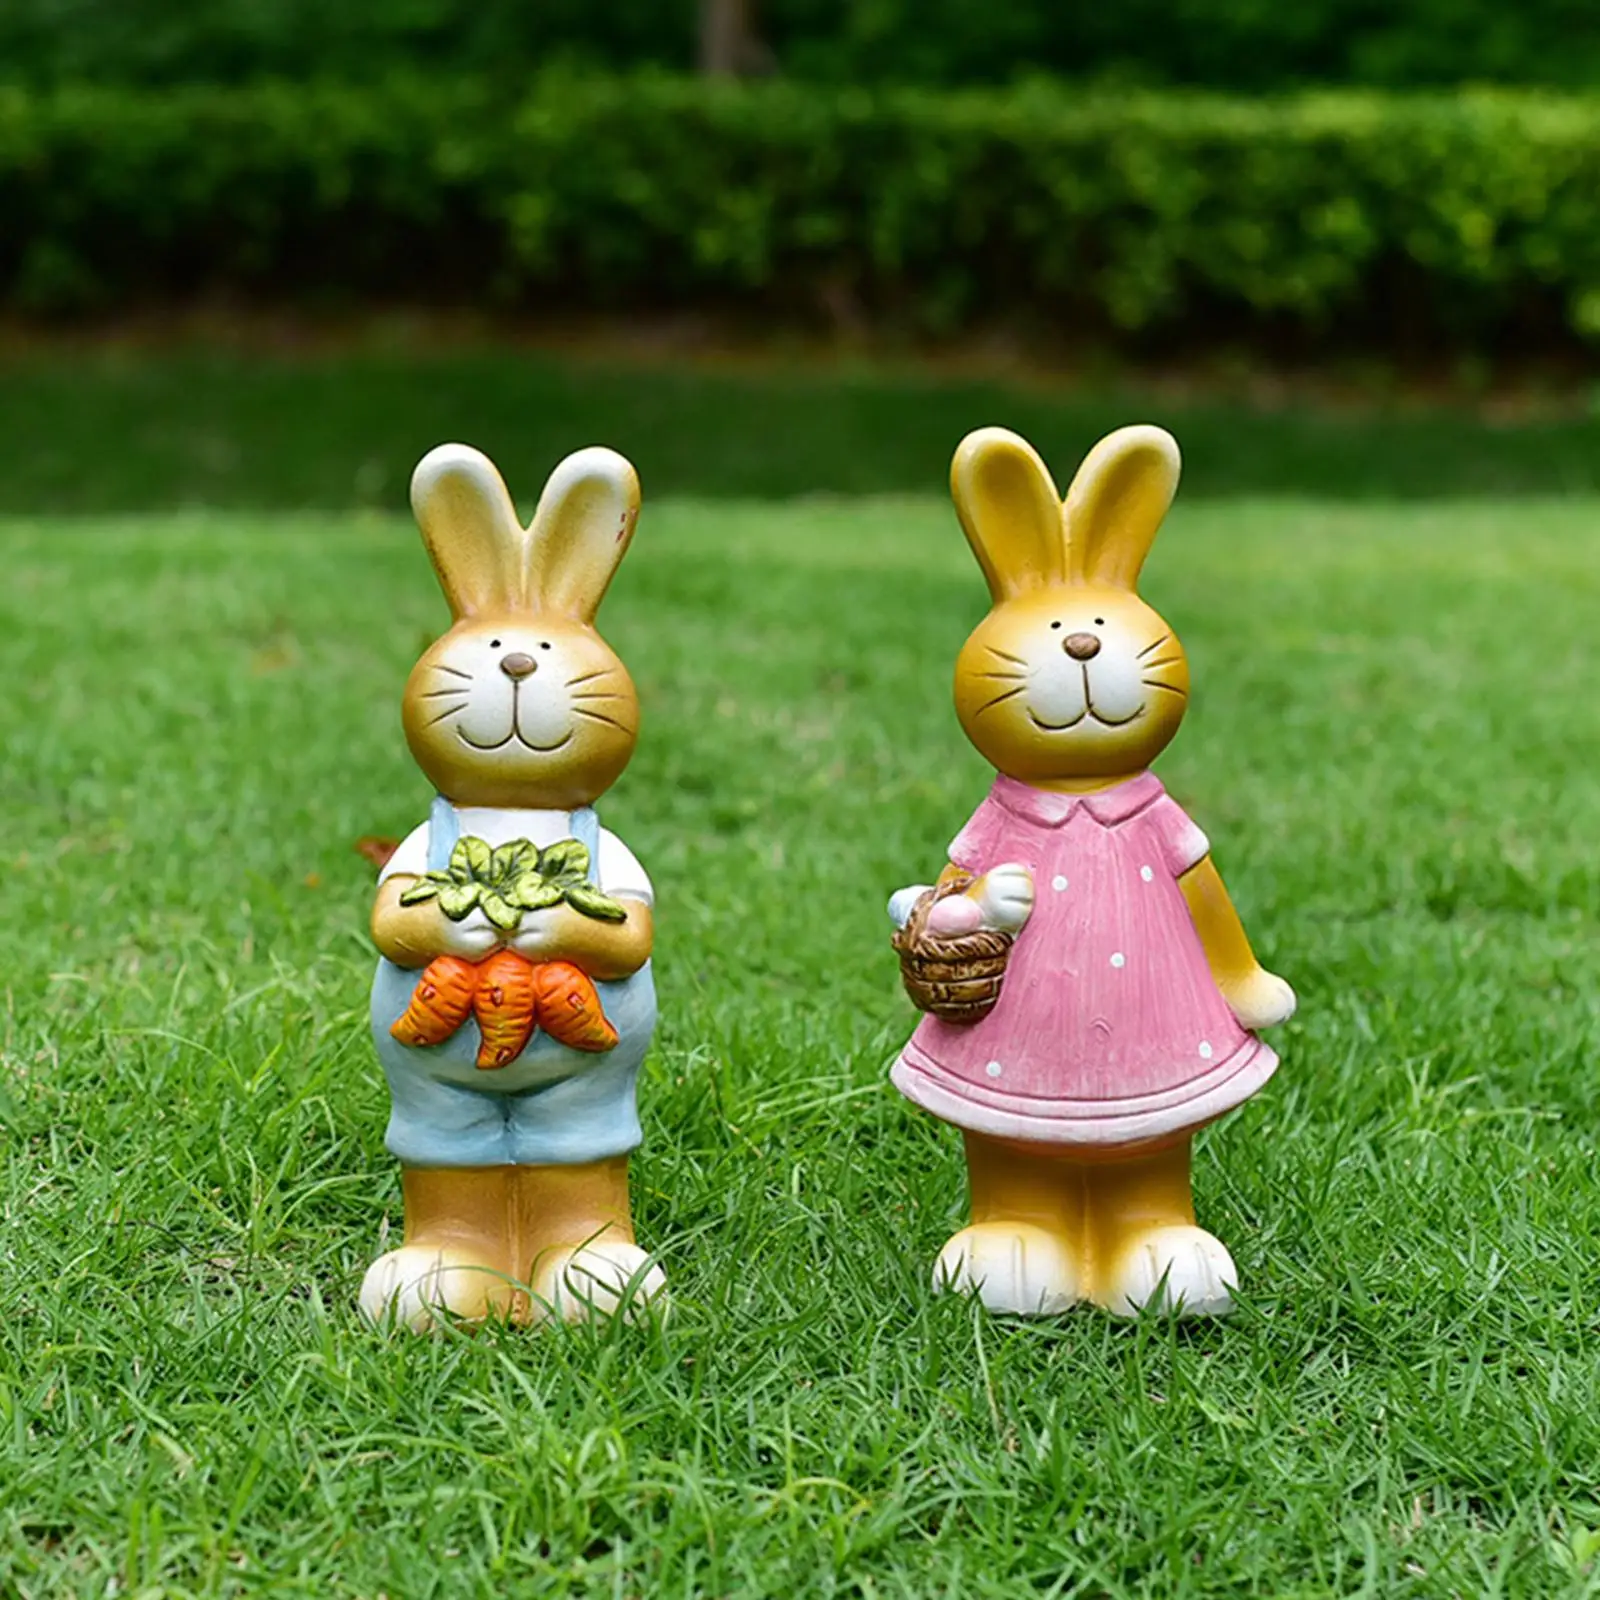 Rabbit Statue Cute Ornament Home Decor Bunny Figurine for Patio Outdoor Lawn